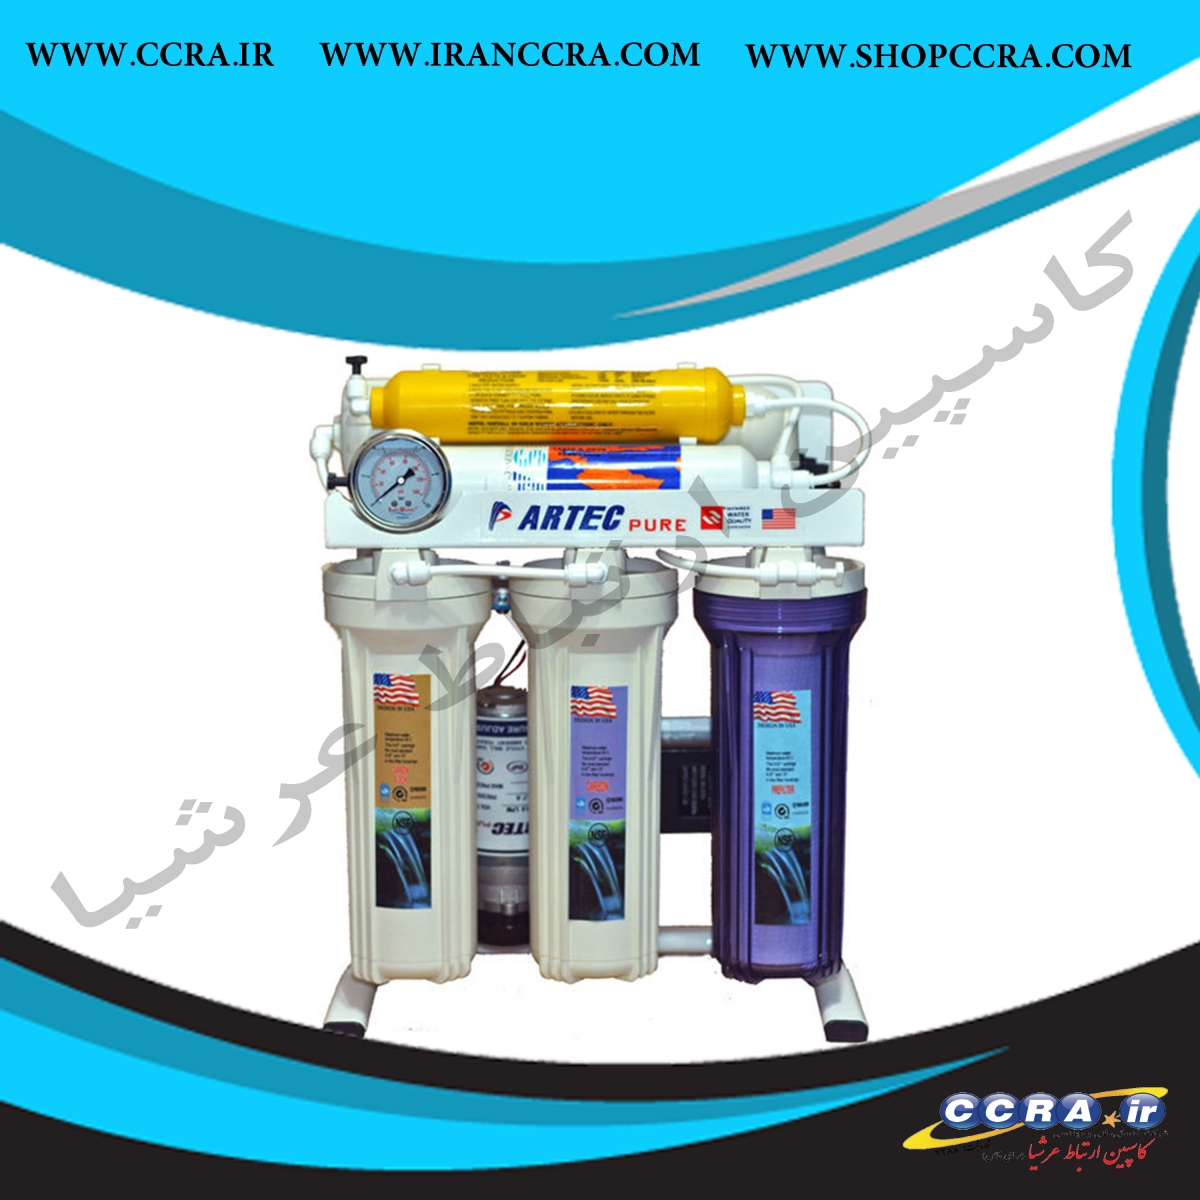 دستگاه تصفیه آب خانگی شش مرحله ای آرتک (Artec)